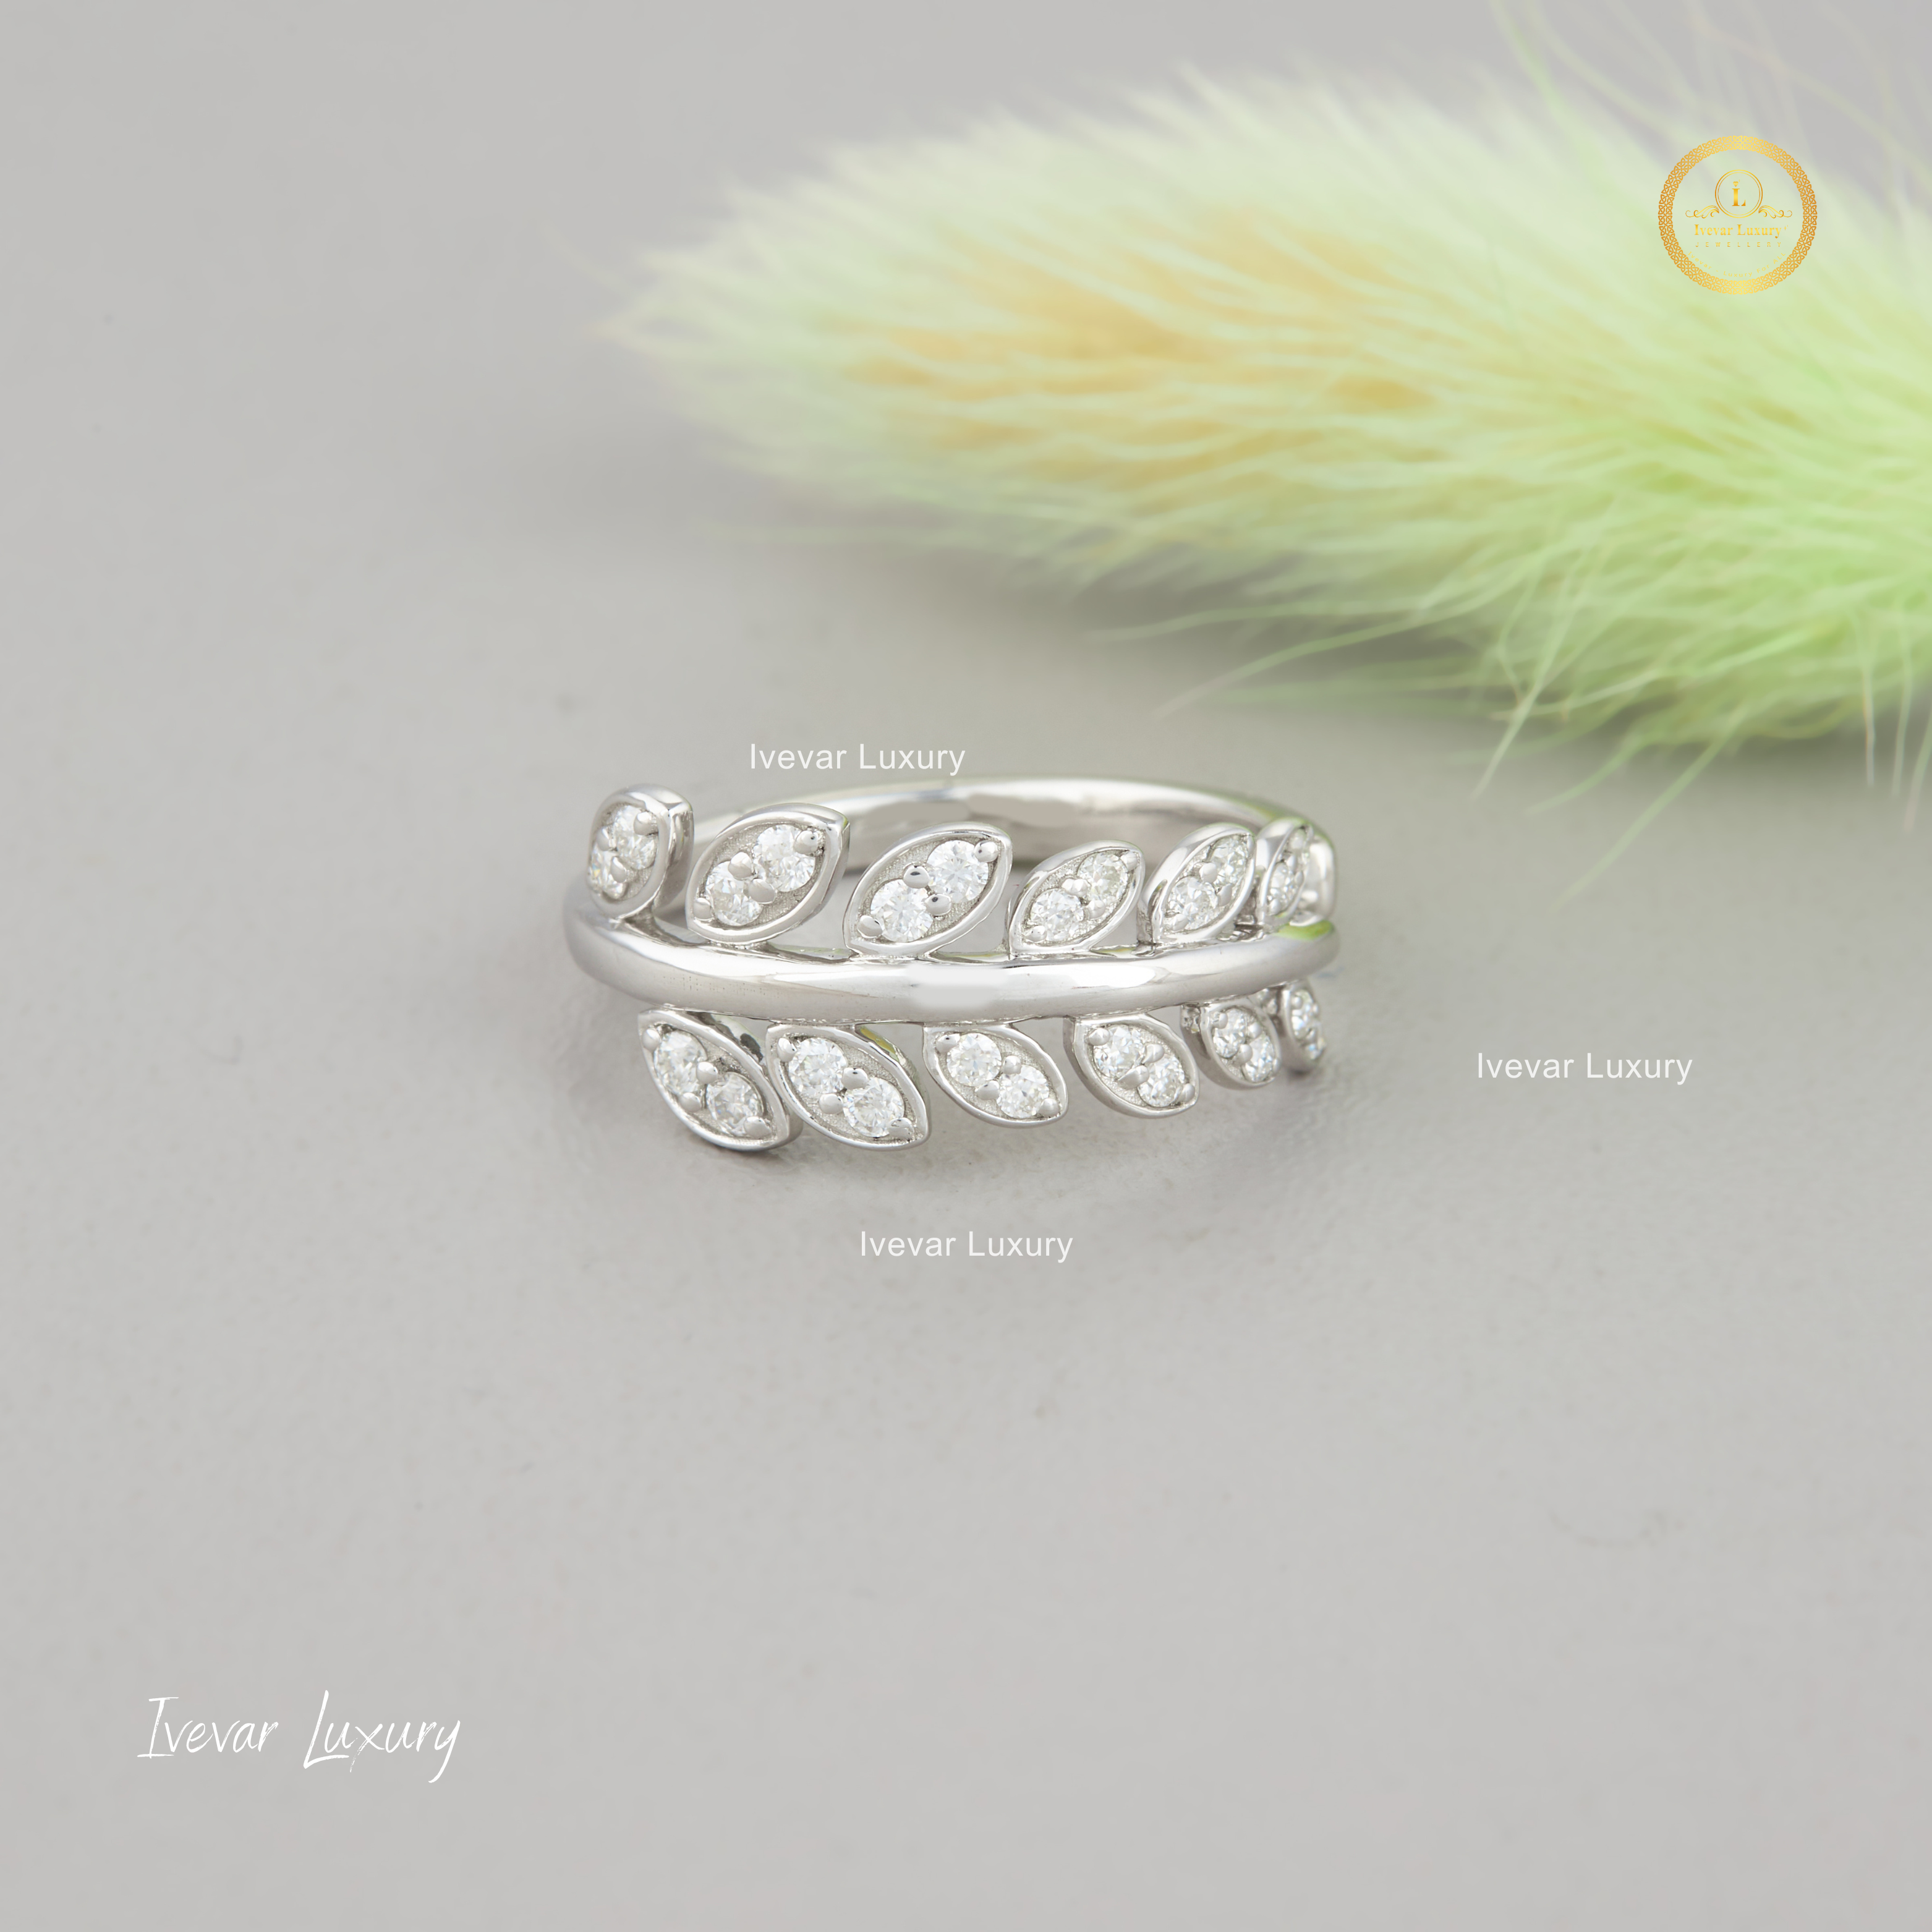 Ivevar 925 Silbver Moissanite Diamond Ring For Women